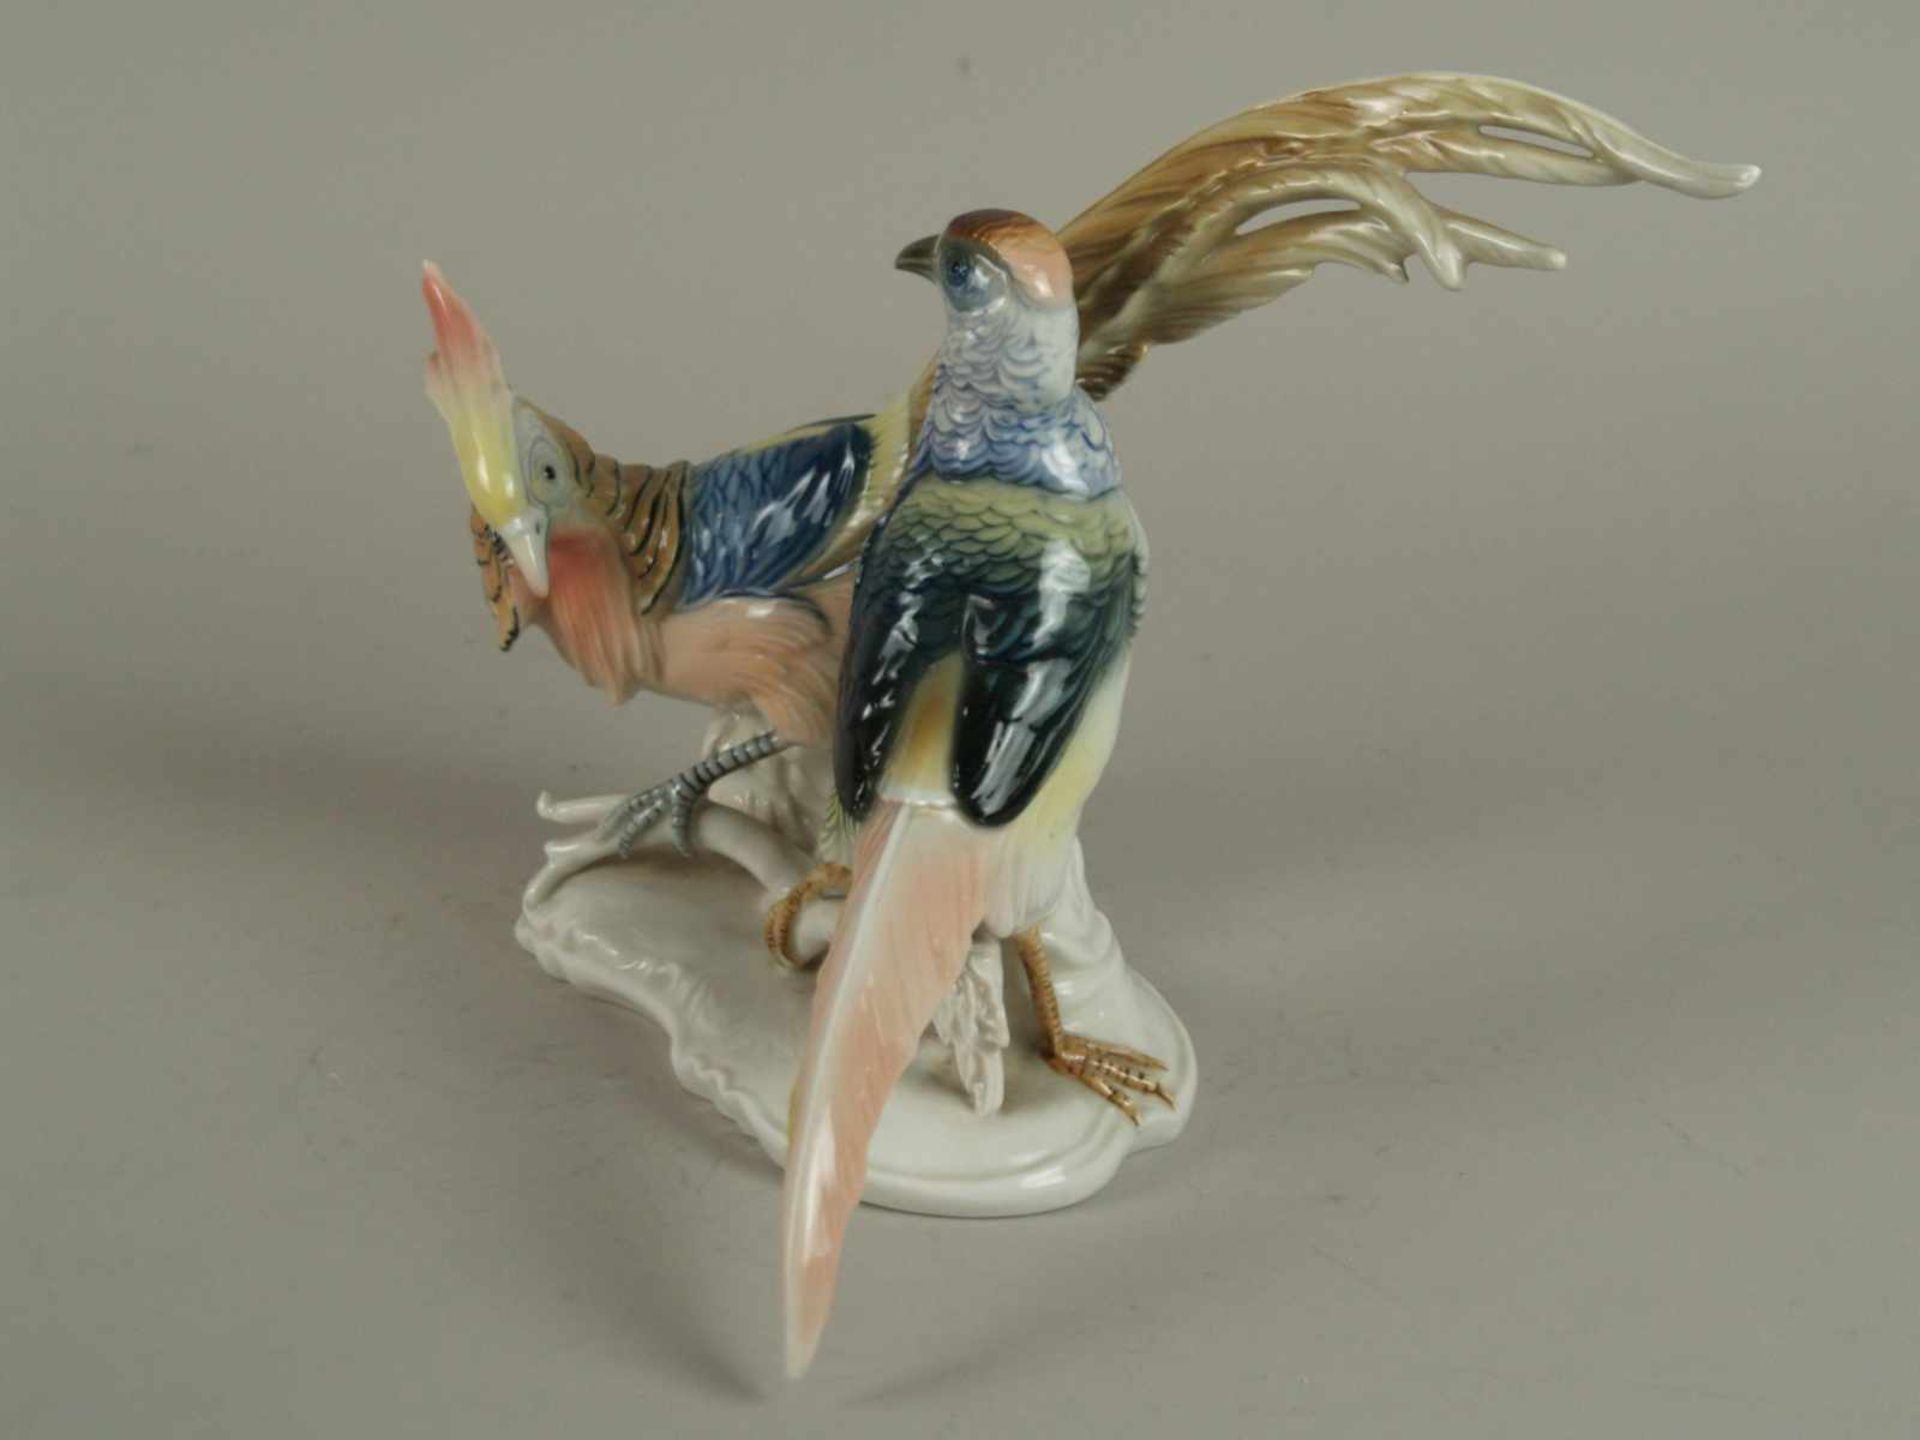 Porzellan-Figur "Fasanenpaar" - Ens, grüne Mühlenmarke,vollplastisch ausgeformte Fasanenvögel auf